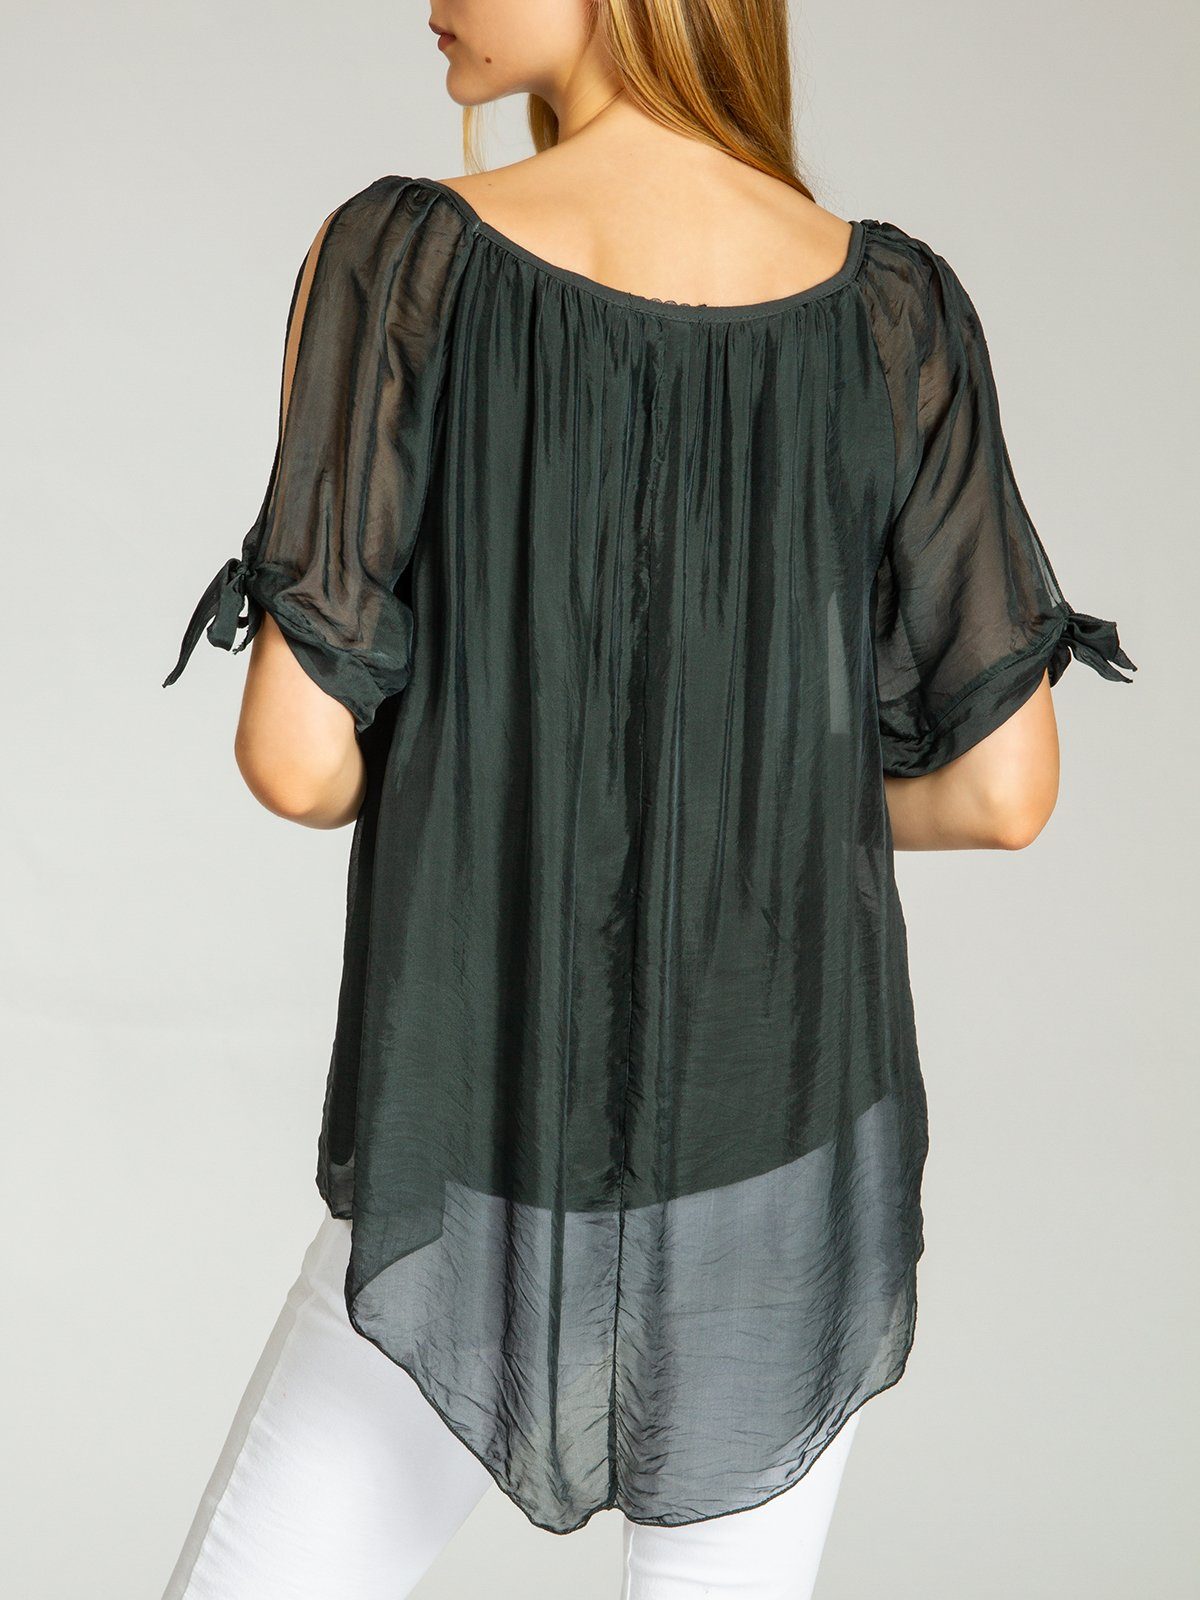 elegante Shirtbluse lange Caspar Damen BLU020 leichte dunkelgrau Bluse mit Seidenanteil Sommer